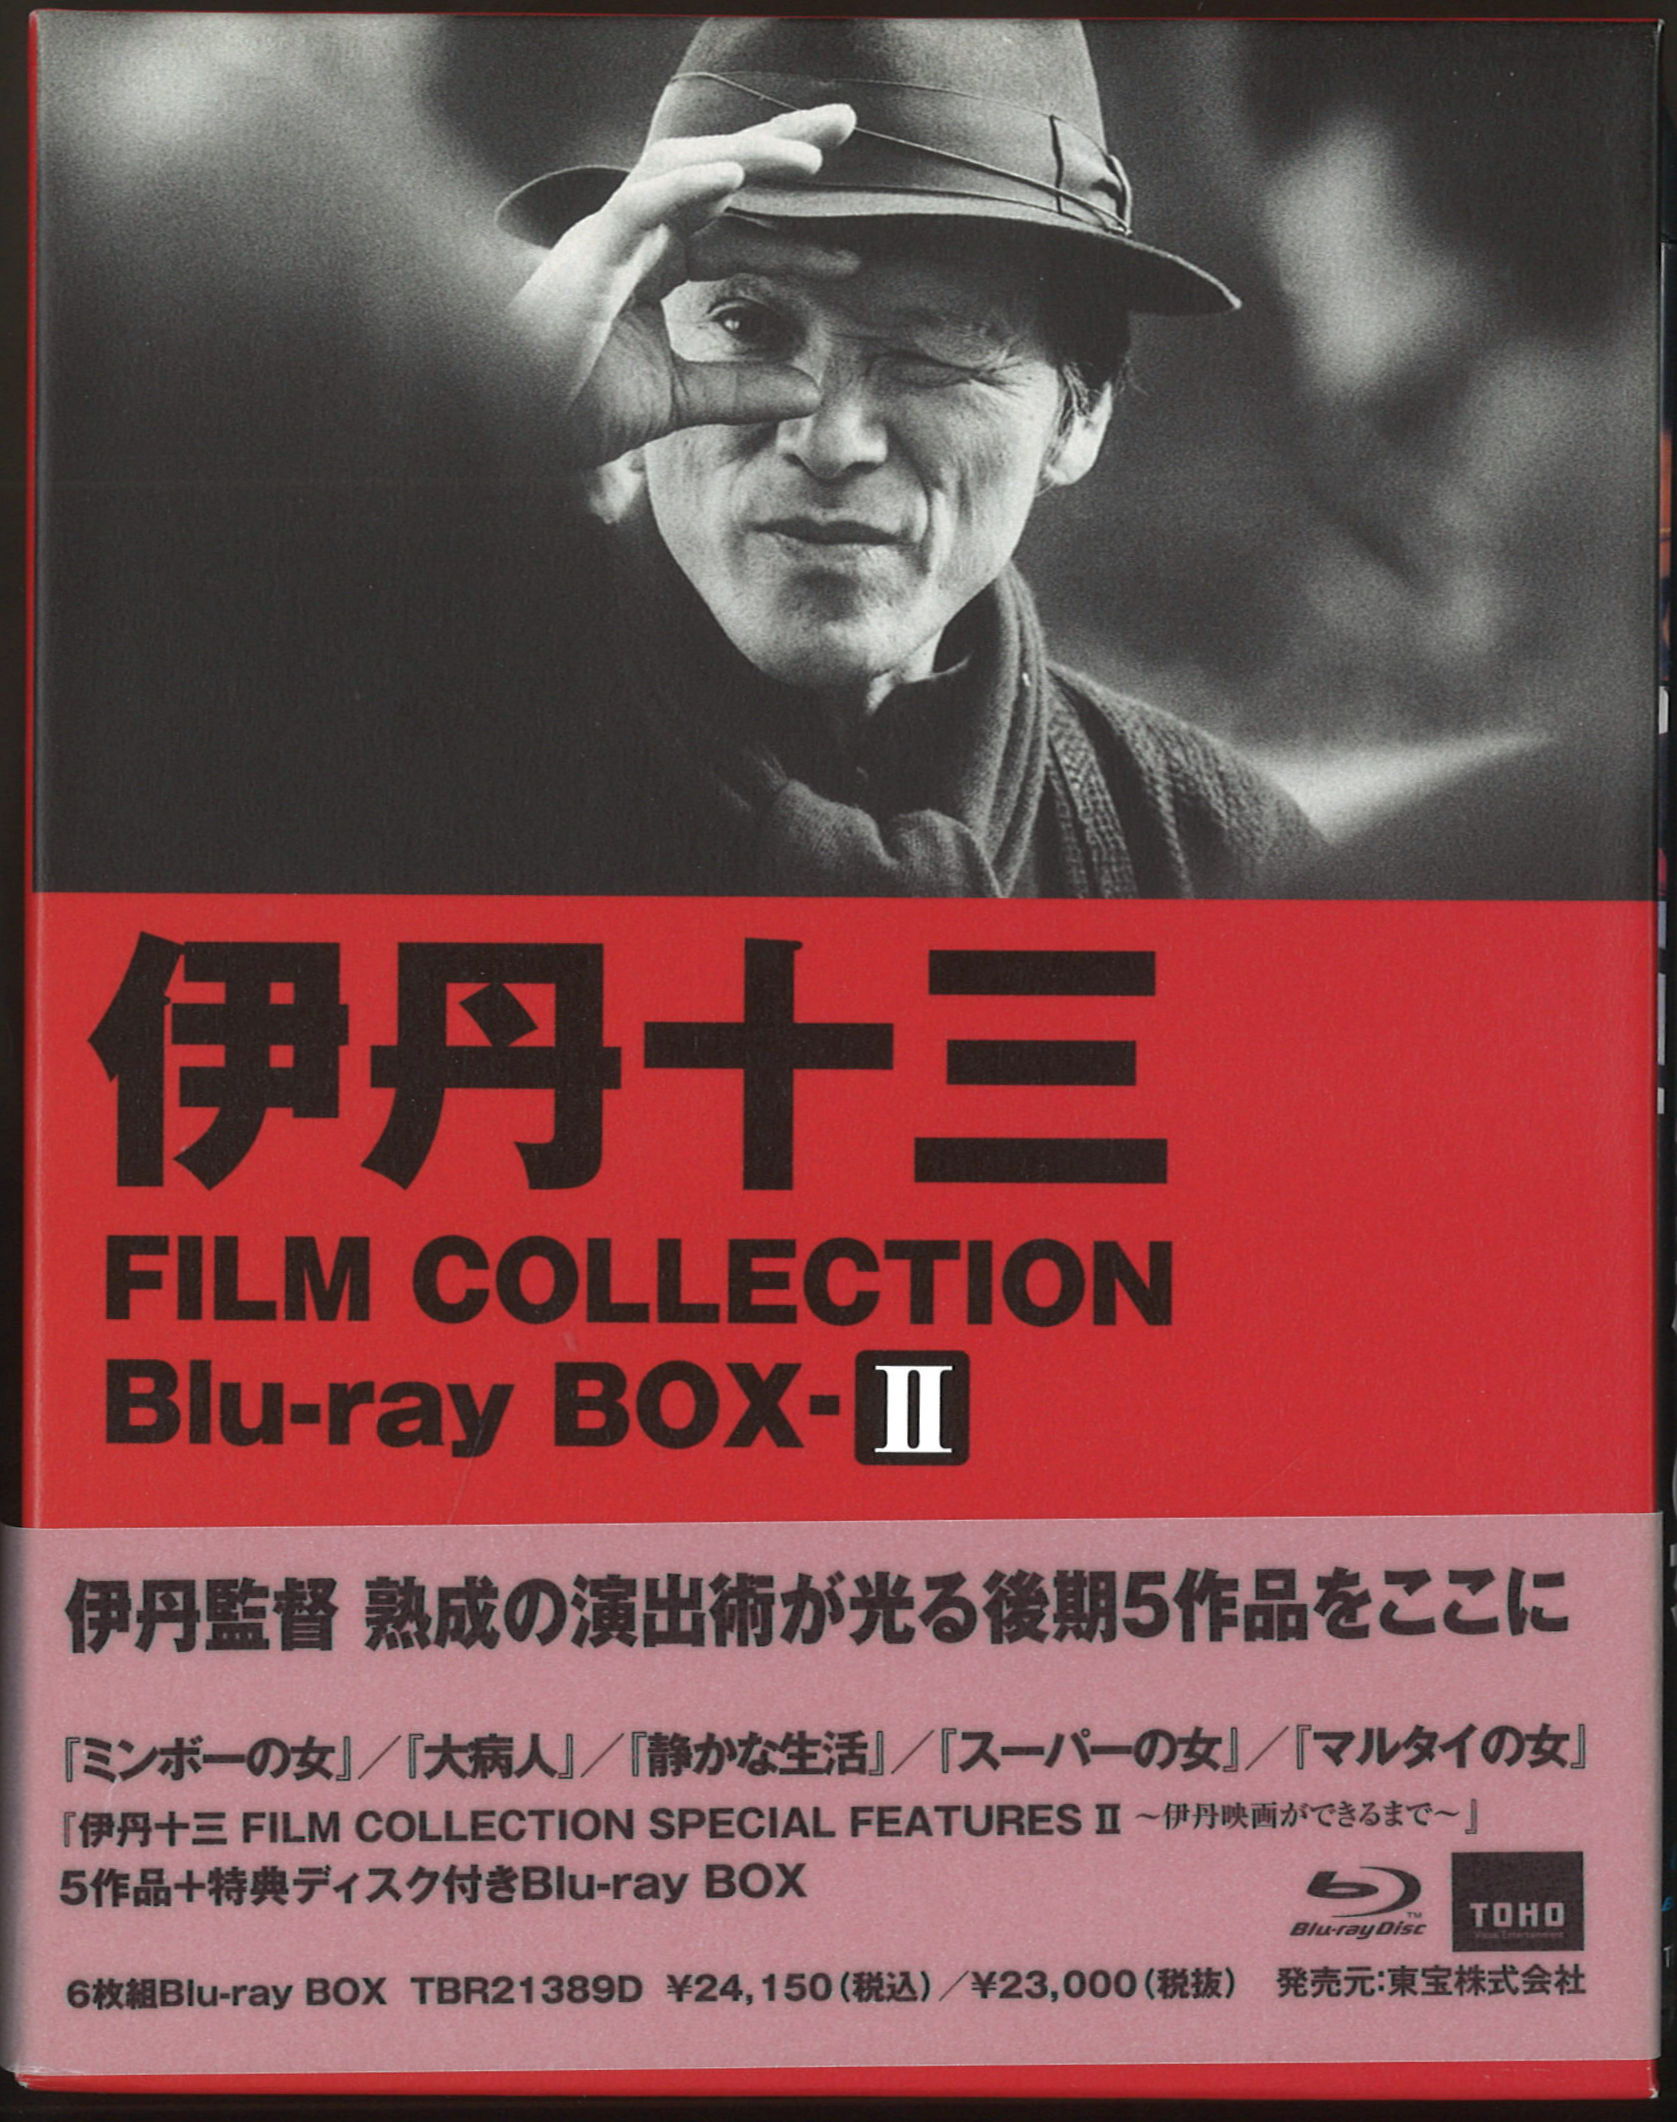 伊丹十三 FILM COLLECTION Blu-ray BOX Ⅱ〈6枚組〉 amevisao.com.br